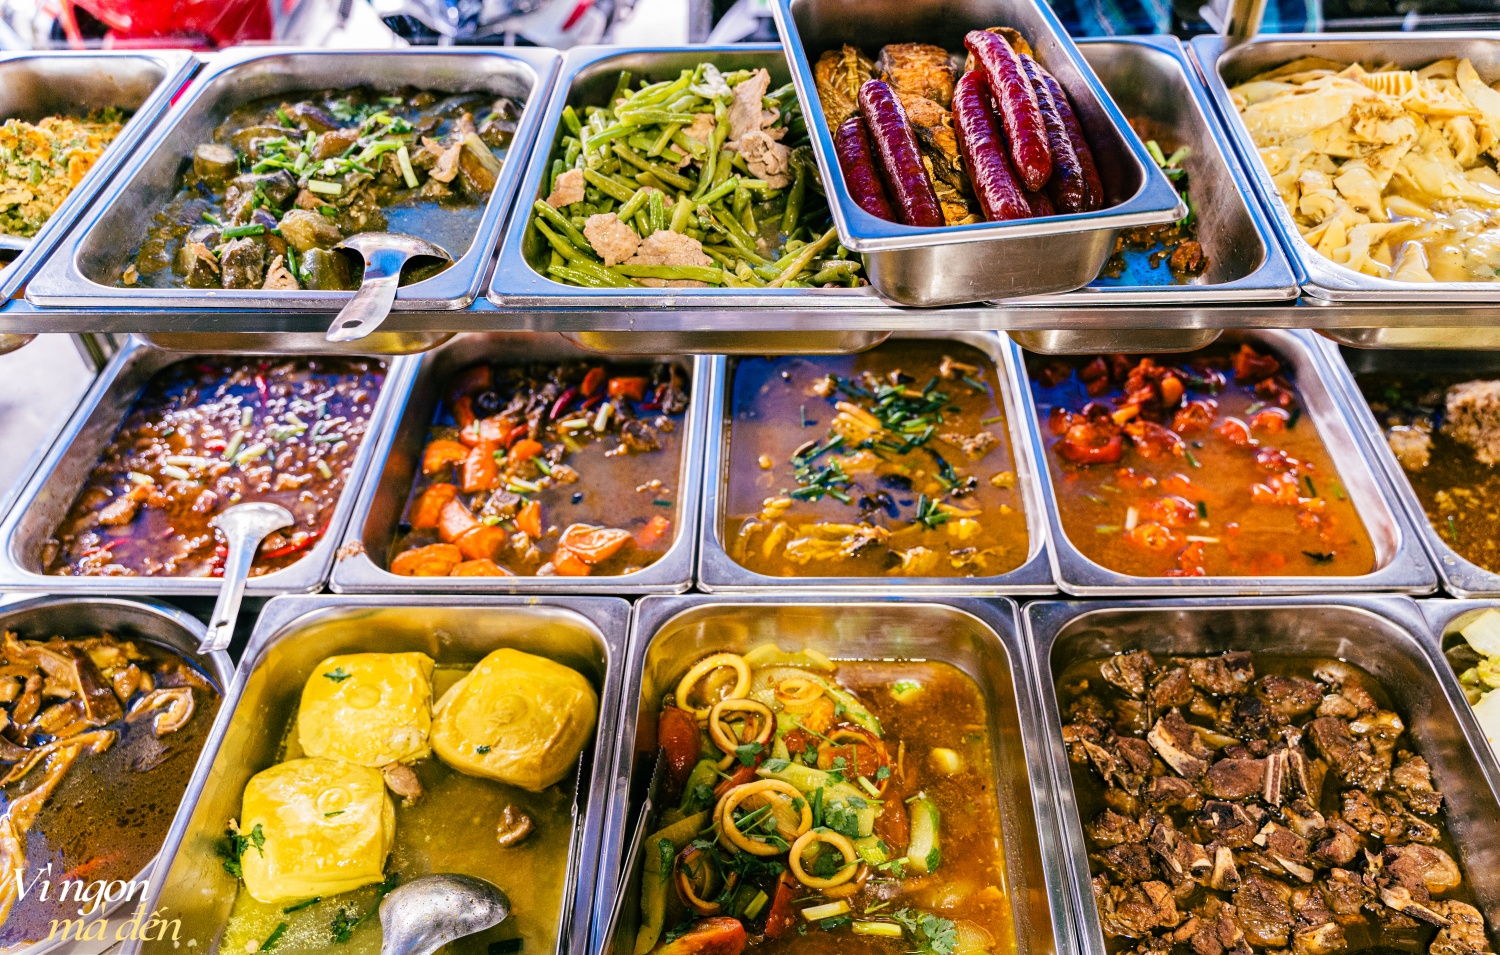 Đi ăn cơm bình dân kiểu người Hoa: Cửa tiệm bán 3 đời mỗi ngày nấu hơn 30 món cầu kỳ, đông khách đến nỗi không dám mở trên ứng dụng giao đồ ăn- Ảnh 2.